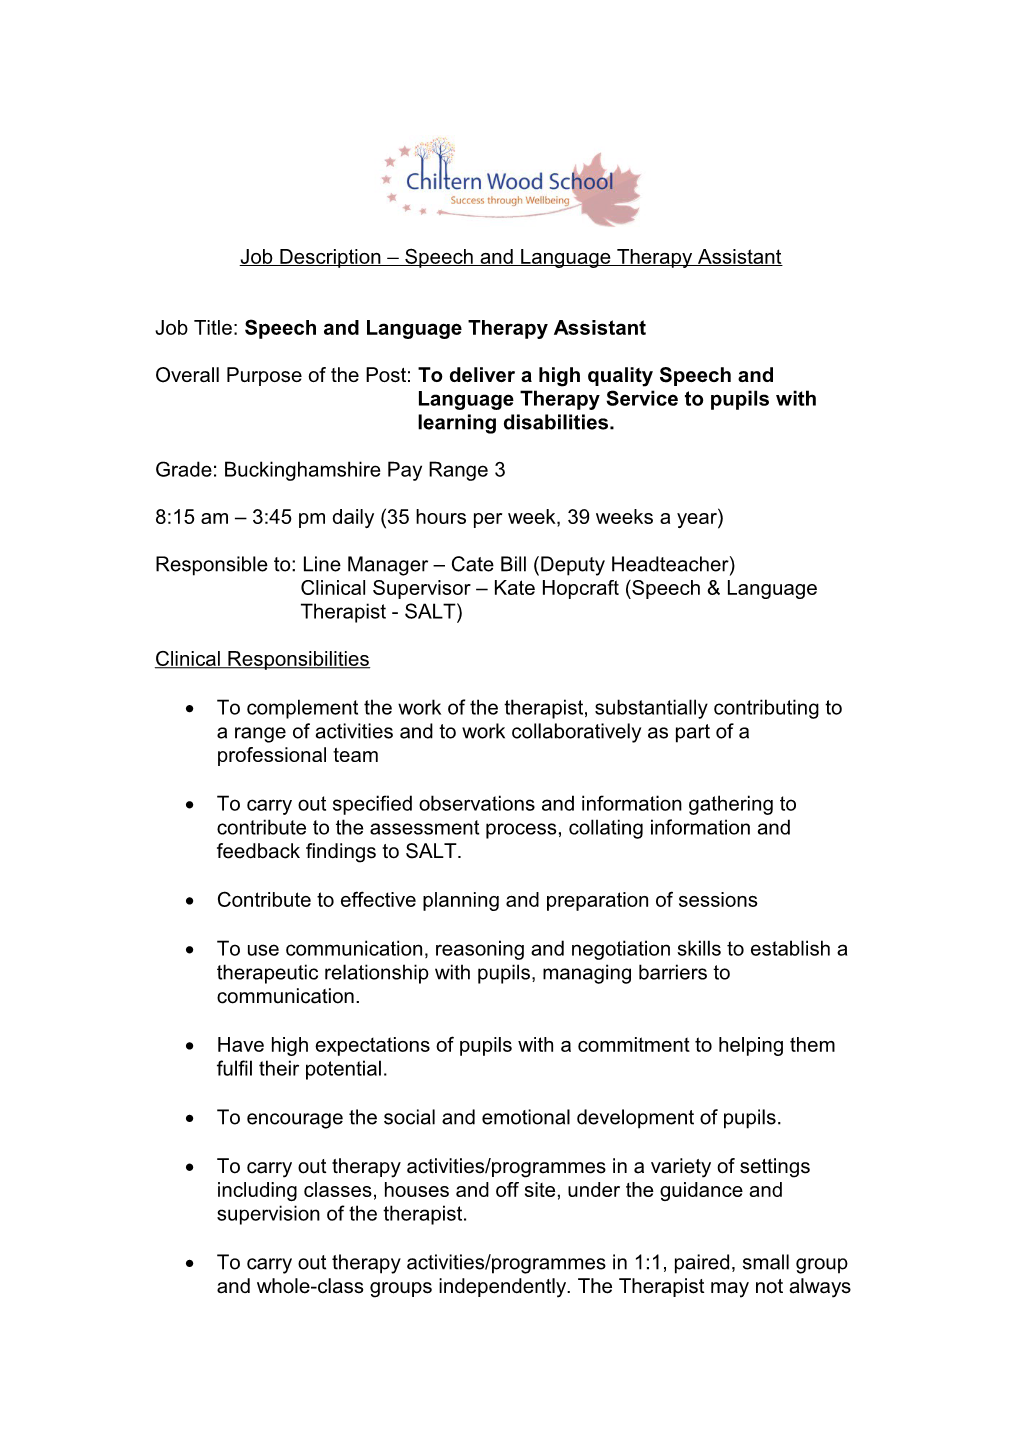 Job Description Speech and Language Therapy Assistant Dec 2012